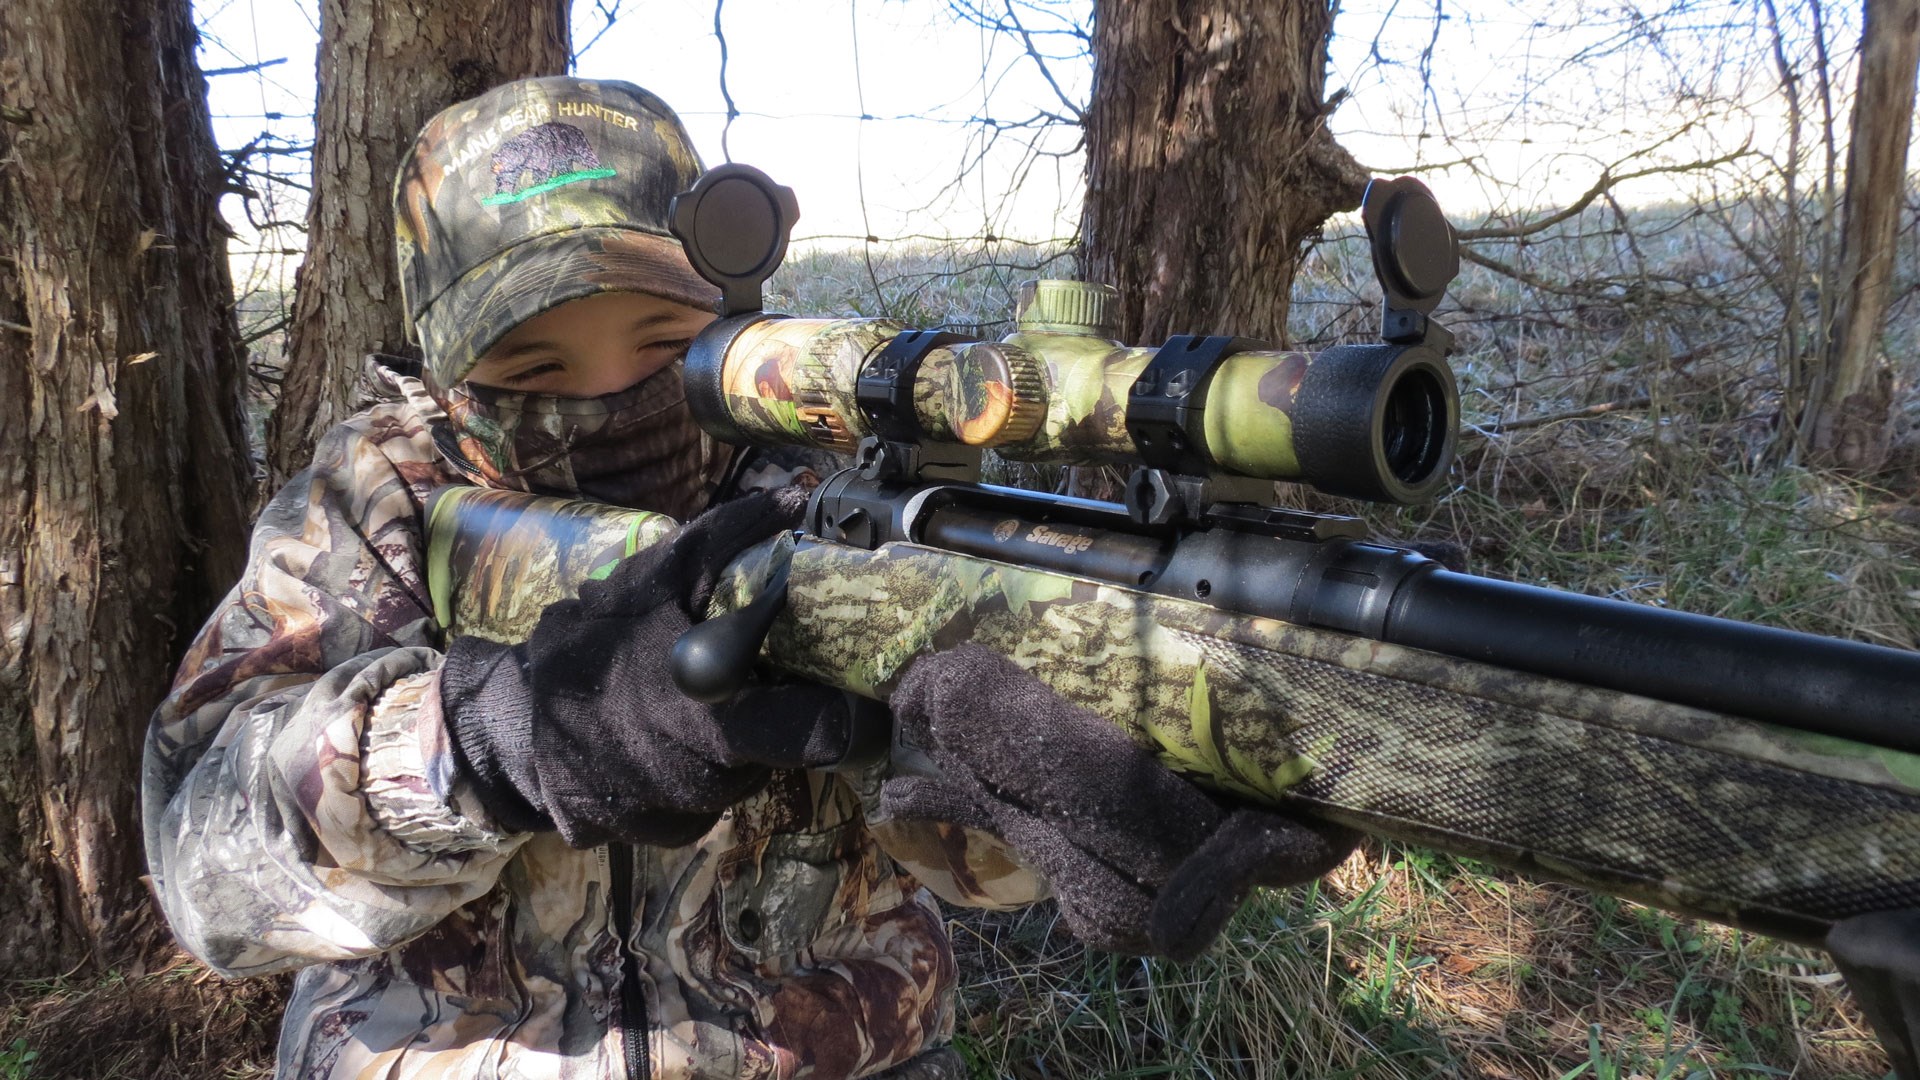 Aiming down a scoped turkey gun